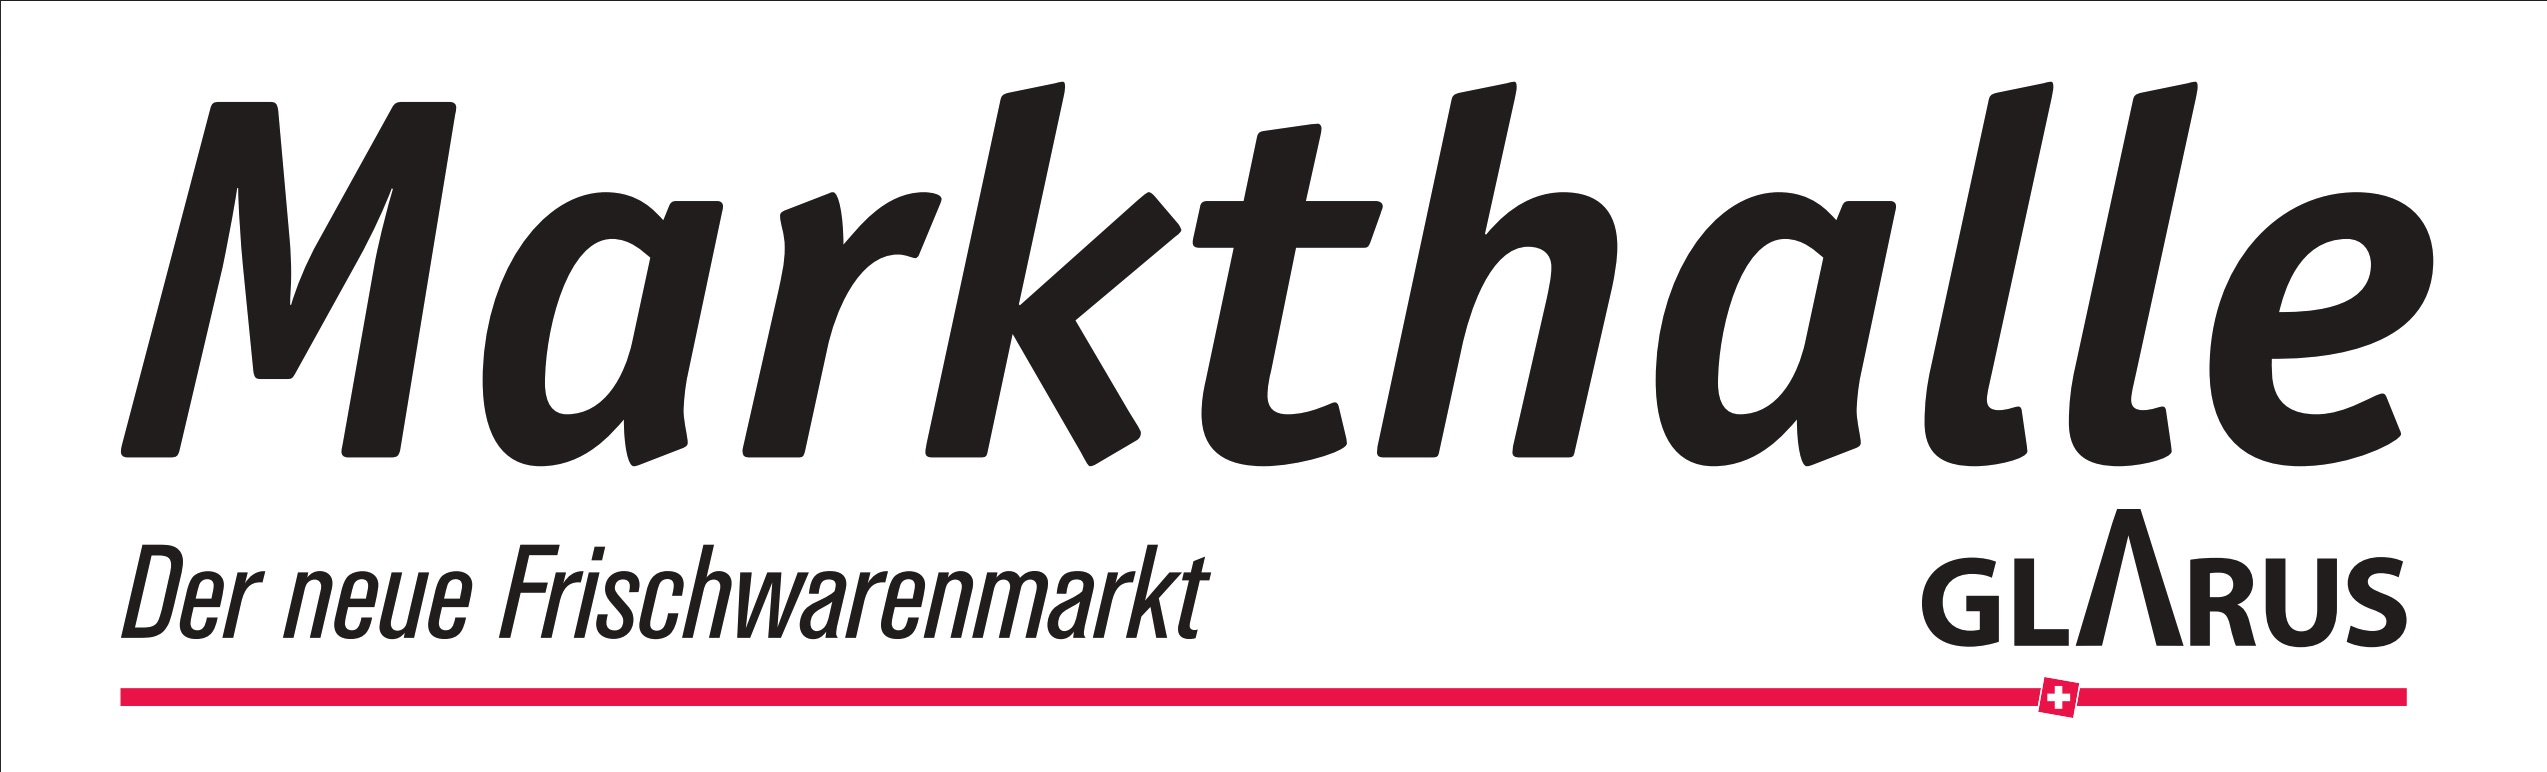 image-8666993-Markthalle_Logo.jpg